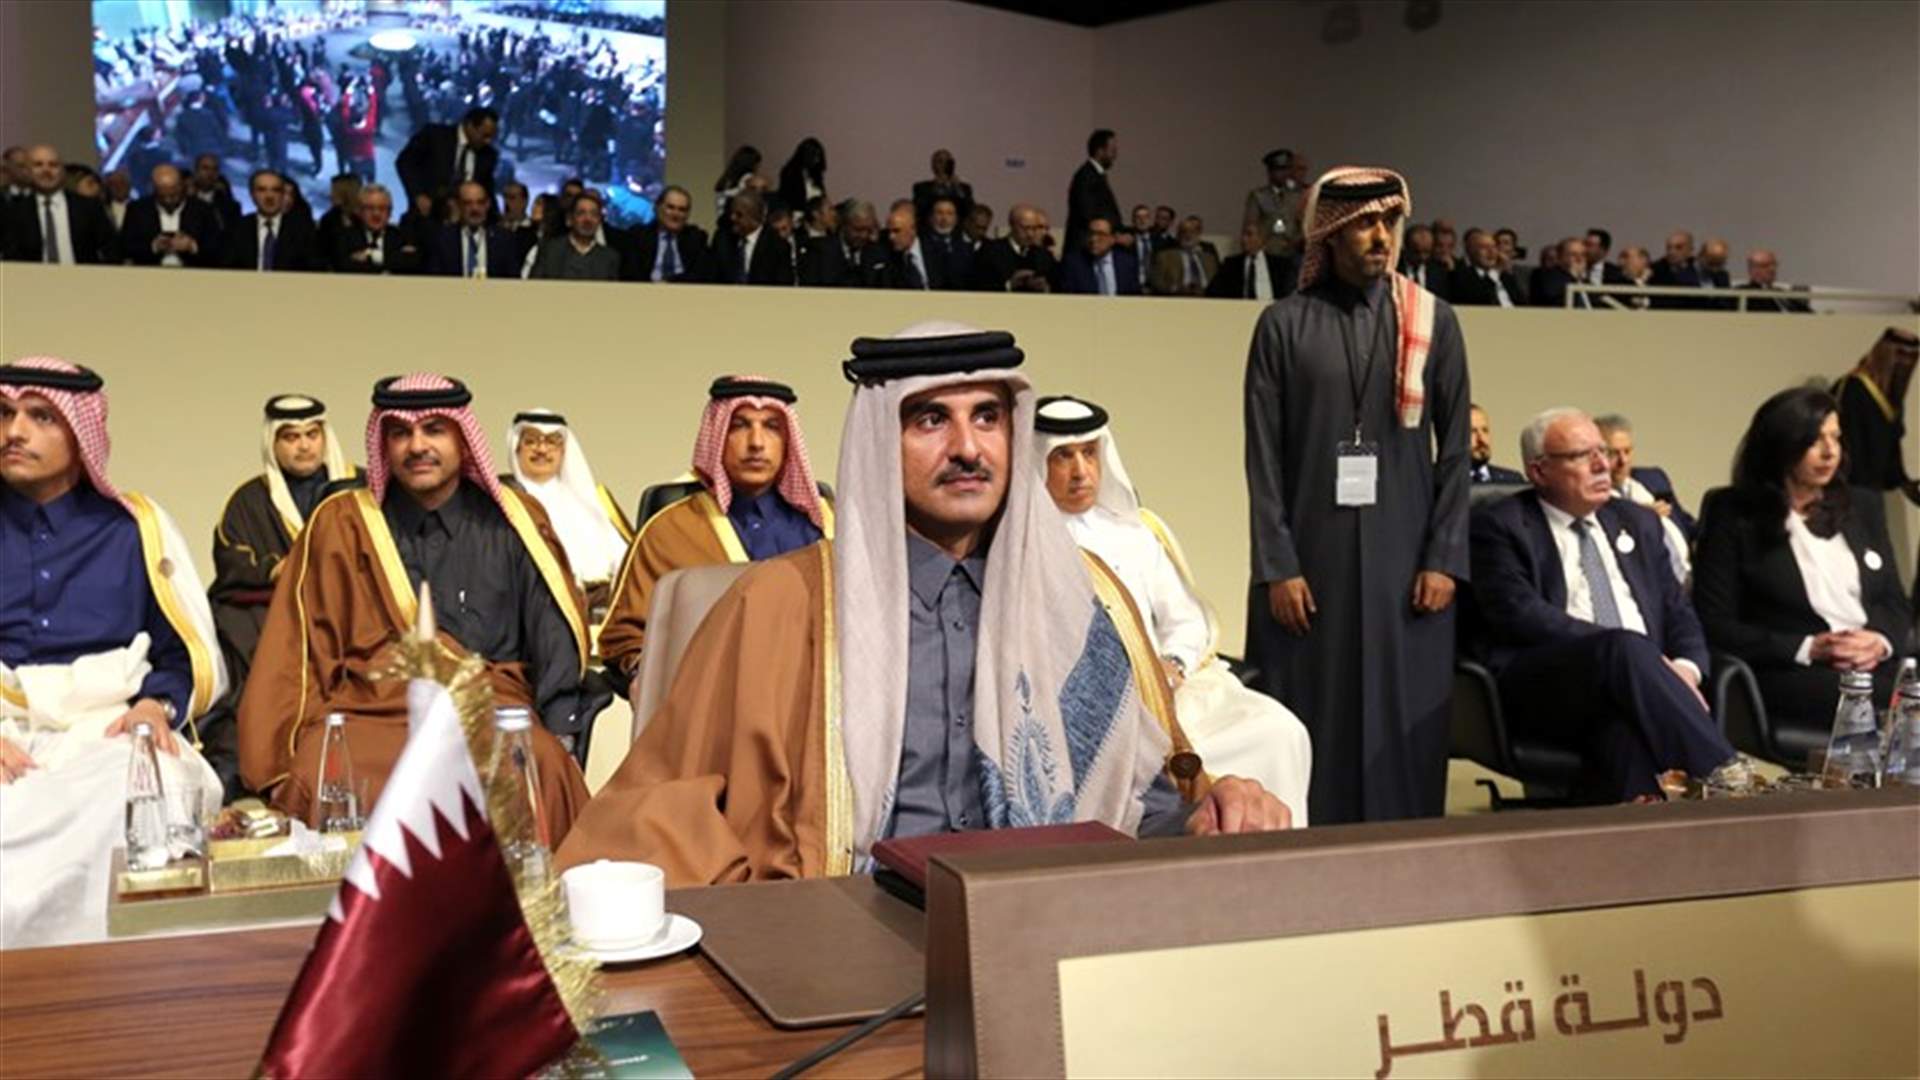 أمير قطر مغردا: قرار مشاركتي في القمة طبيعي... وشكرا للبنان